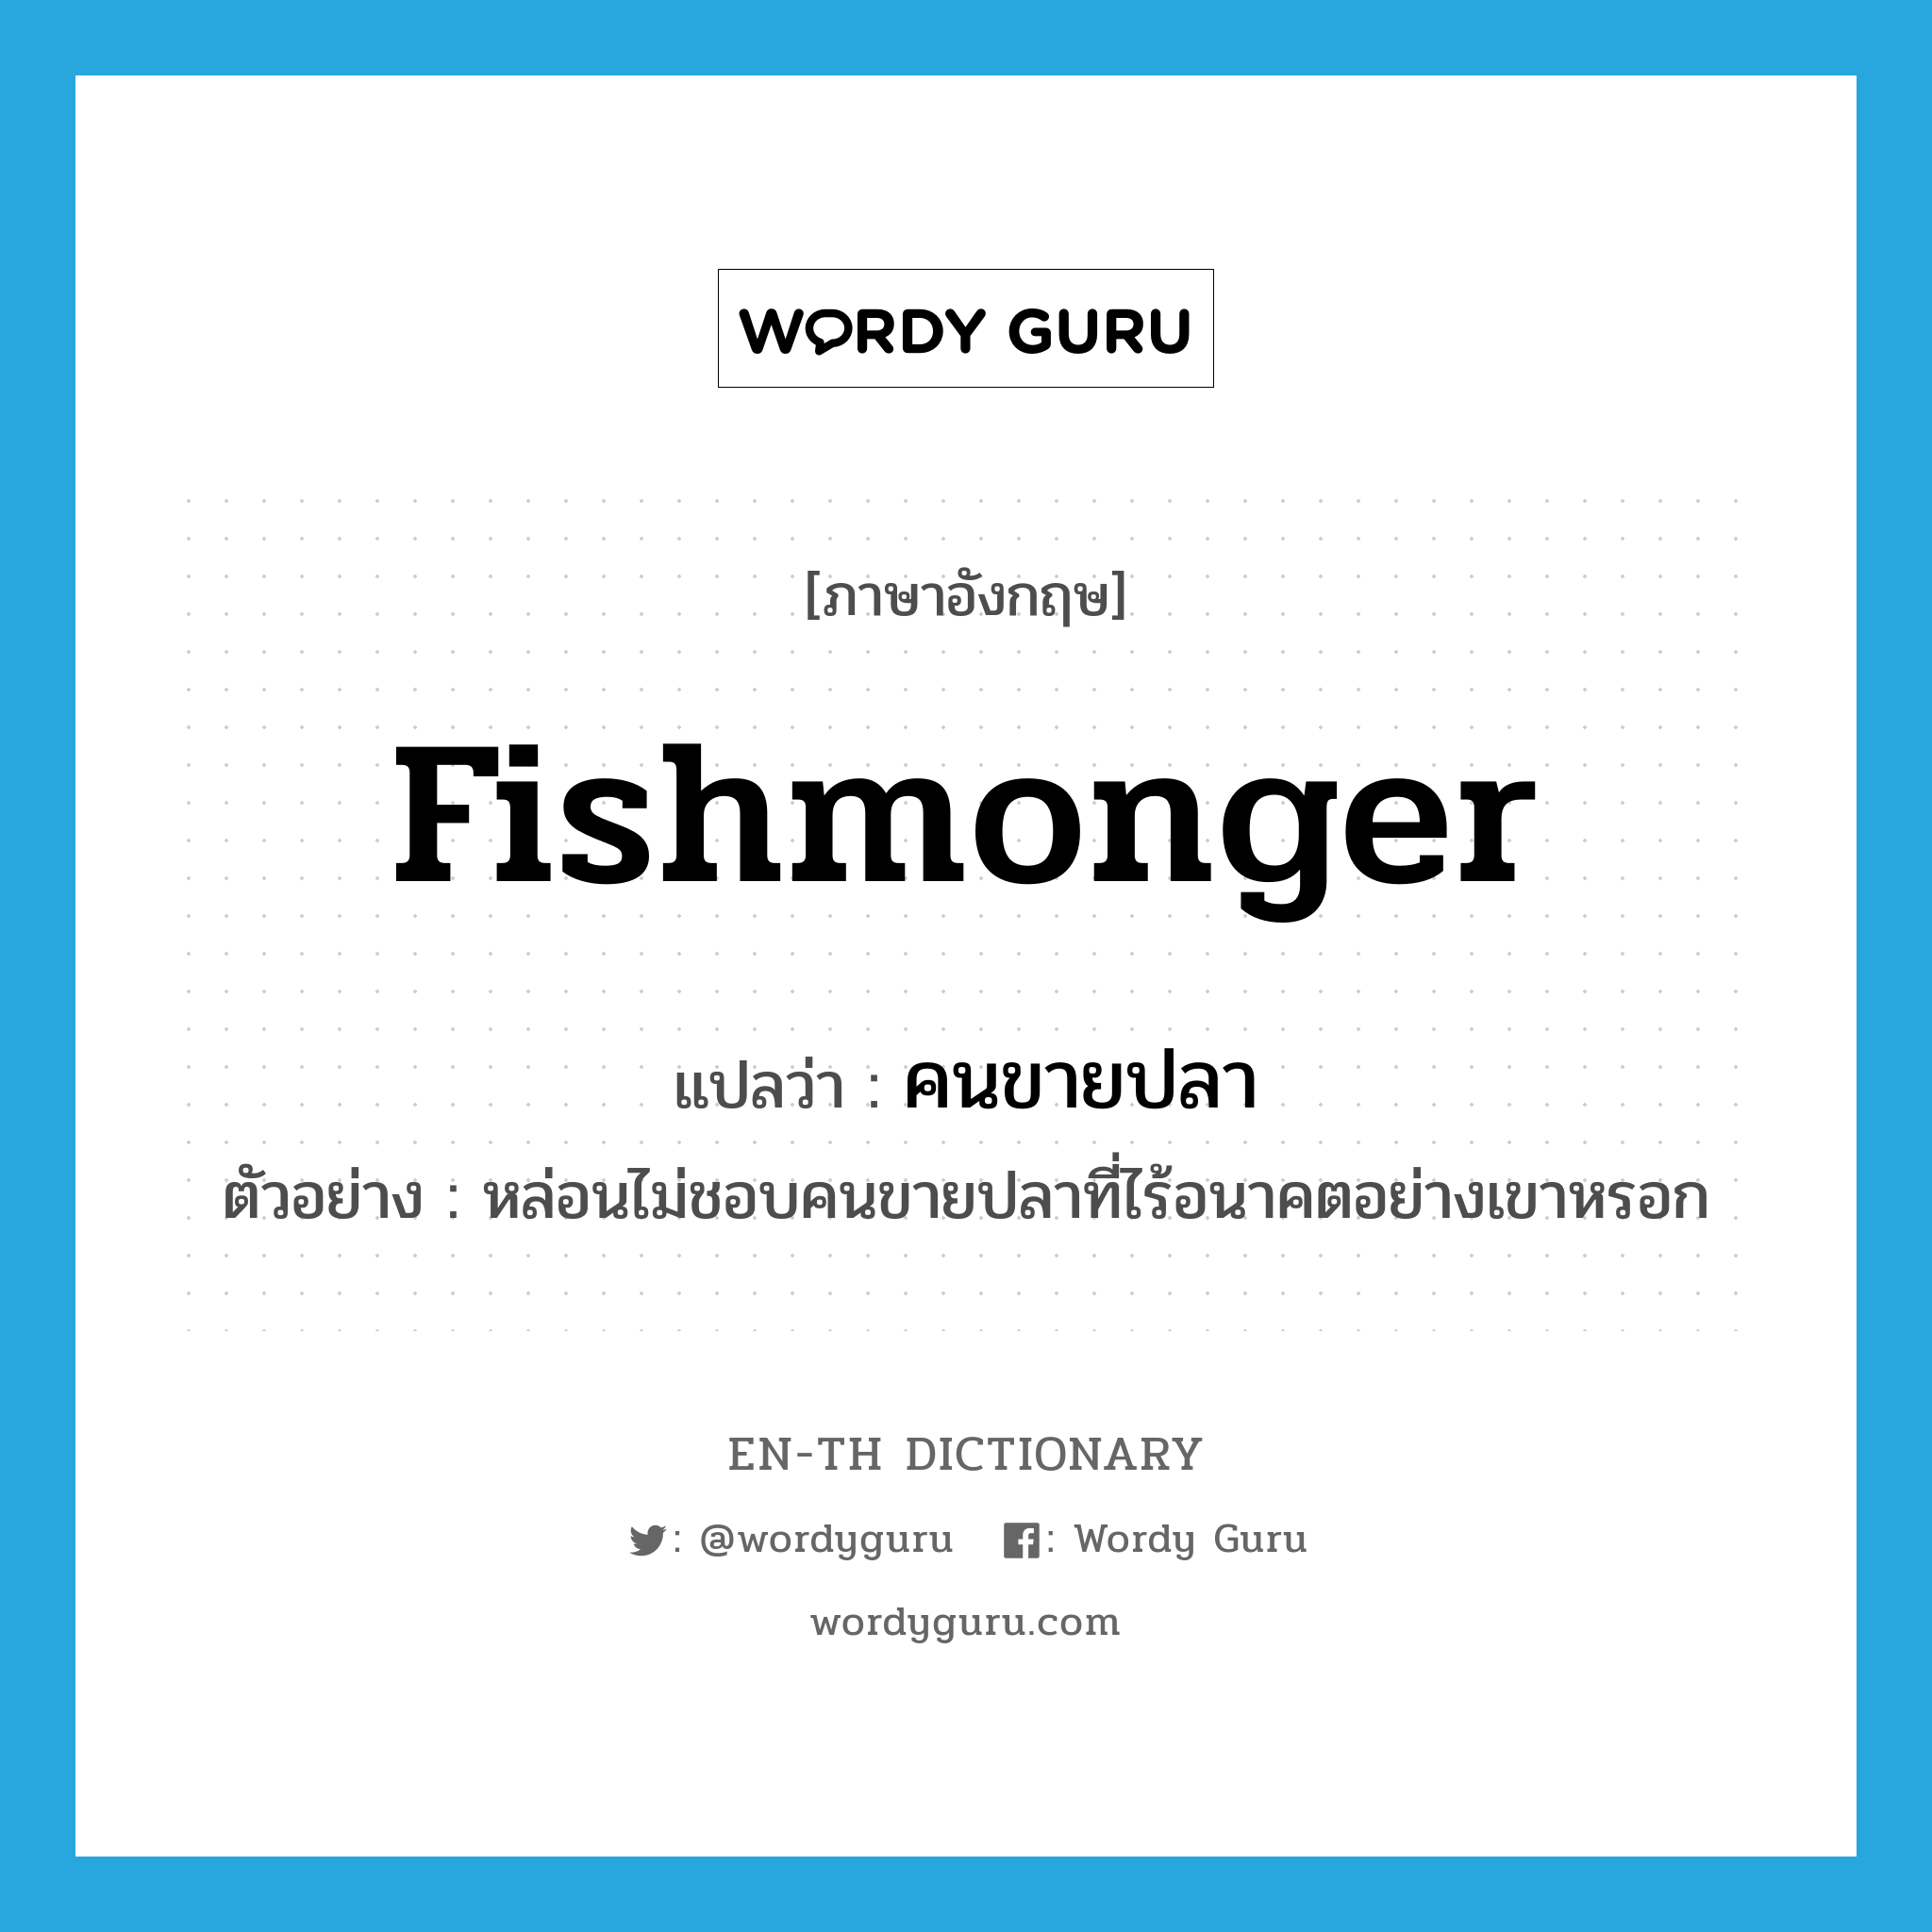 fishmonger แปลว่า?, คำศัพท์ภาษาอังกฤษ fishmonger แปลว่า คนขายปลา ประเภท N ตัวอย่าง หล่อนไม่ชอบคนขายปลาที่ไร้อนาคตอย่างเขาหรอก หมวด N